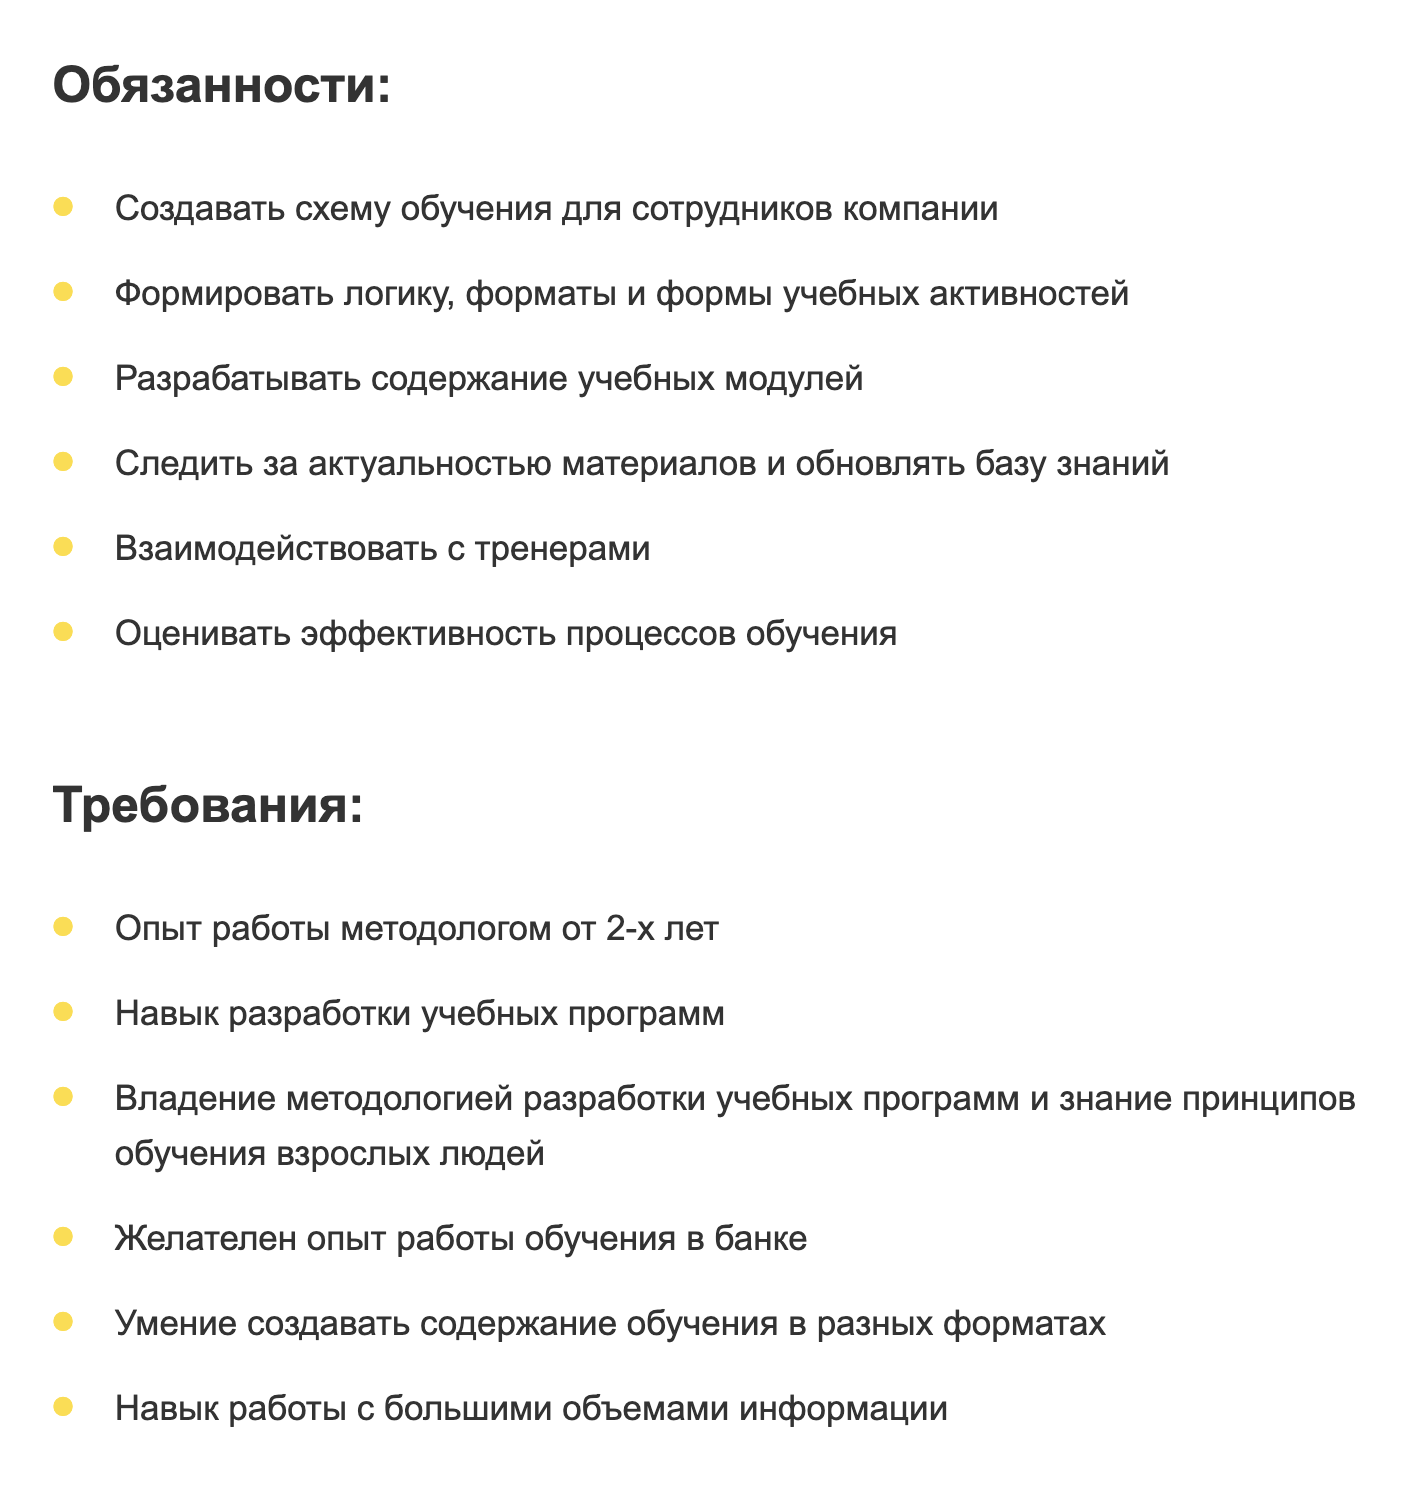 Это обязанности и требования к кандидату на вакансию методолога отдела обучения в Тинькофф. Работодатель разместил объявление на сайте hh.ru